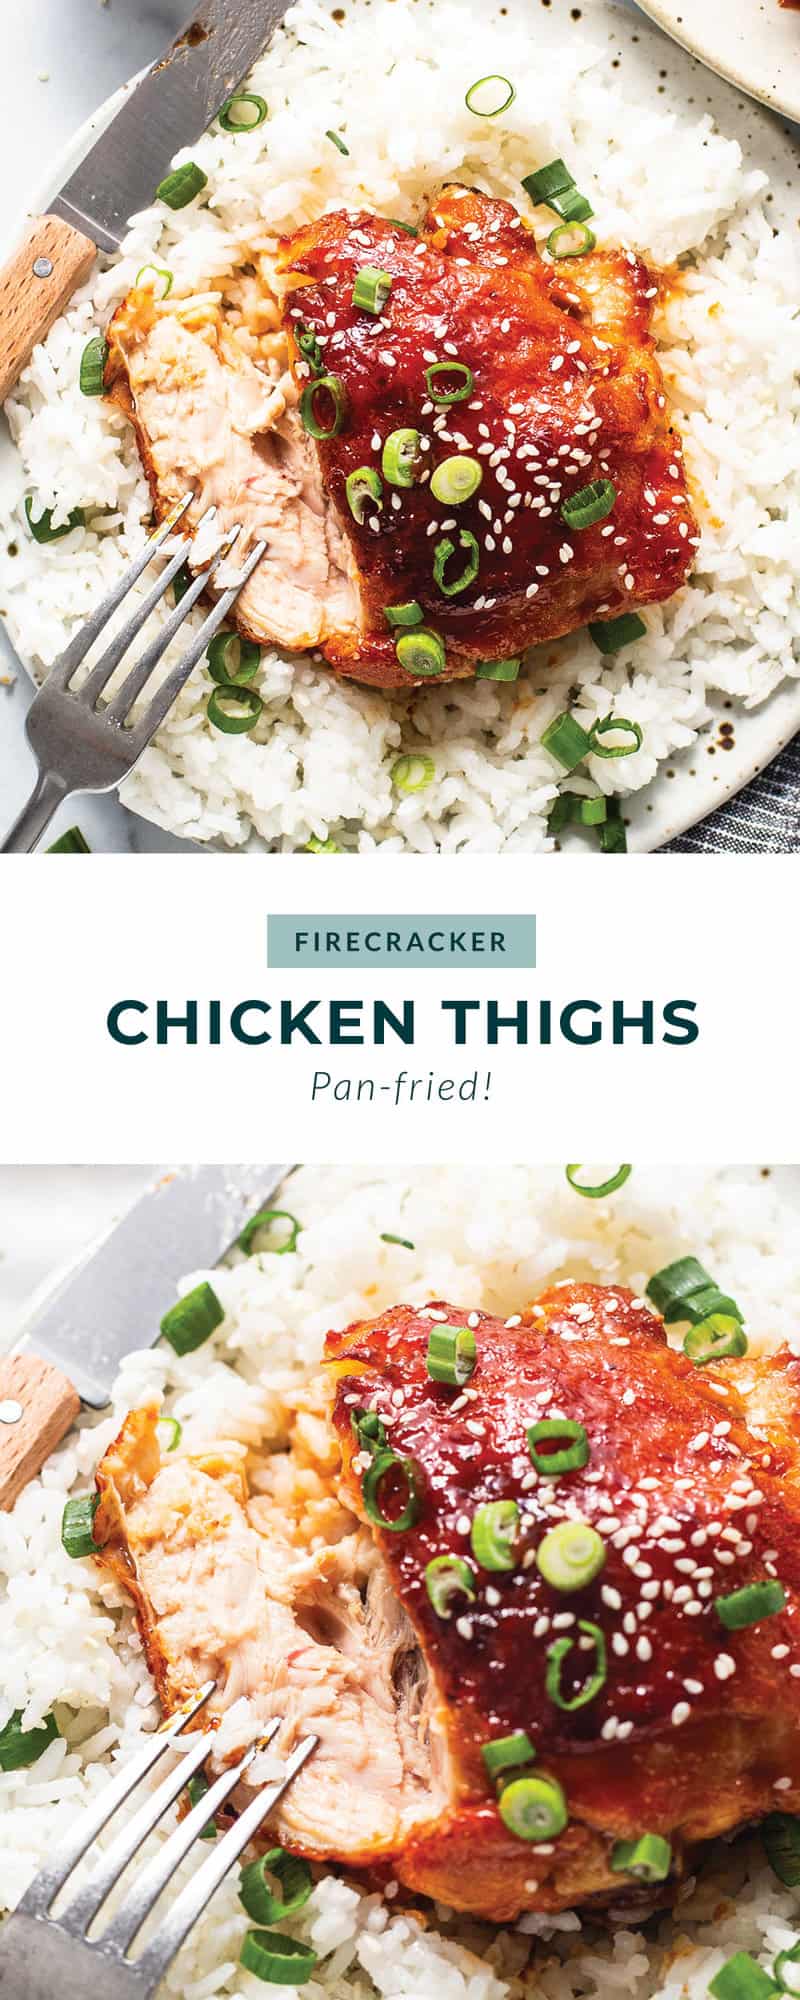 Crispy Firecracker Chicken Thighs - Fit Foodie Finds